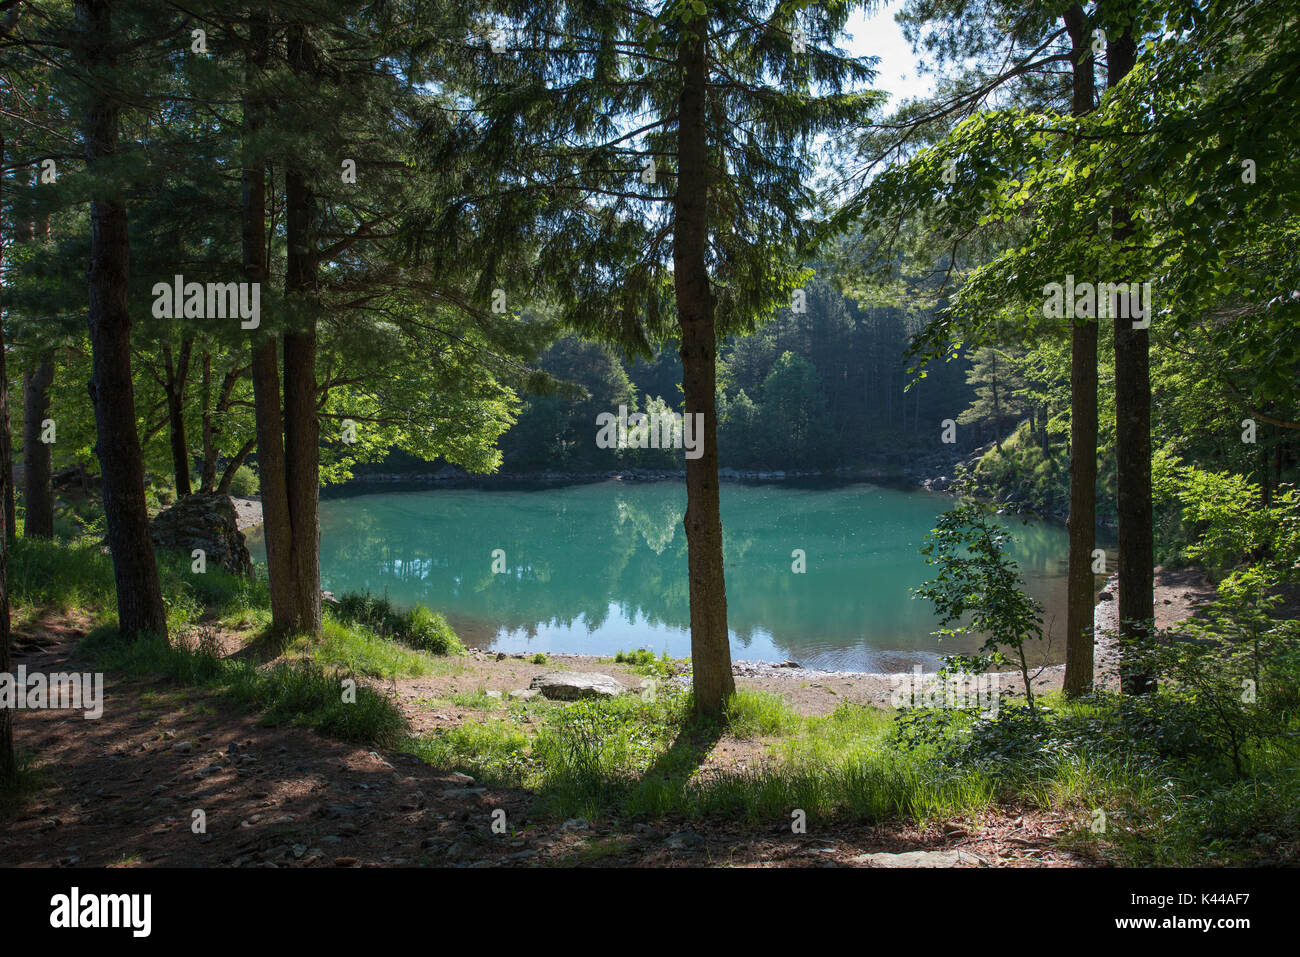 Aveto Valley Regional Park, lac boiteux, Ligurie, Italie. Le lac glaciaire boiteux avec la réflexion de l'arbre Banque D'Images